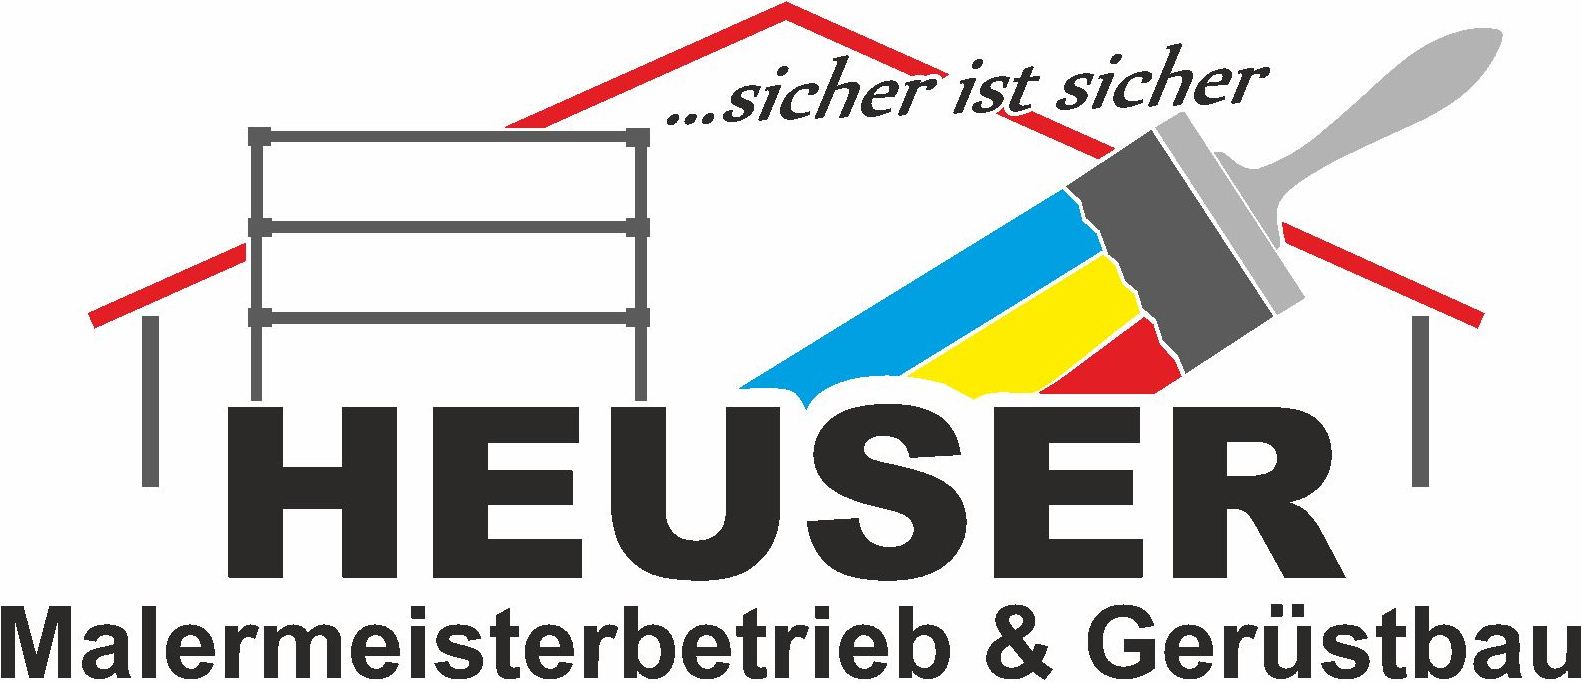 Heuser - Malermeisterbetrieb und Gerüstbau in Marburg